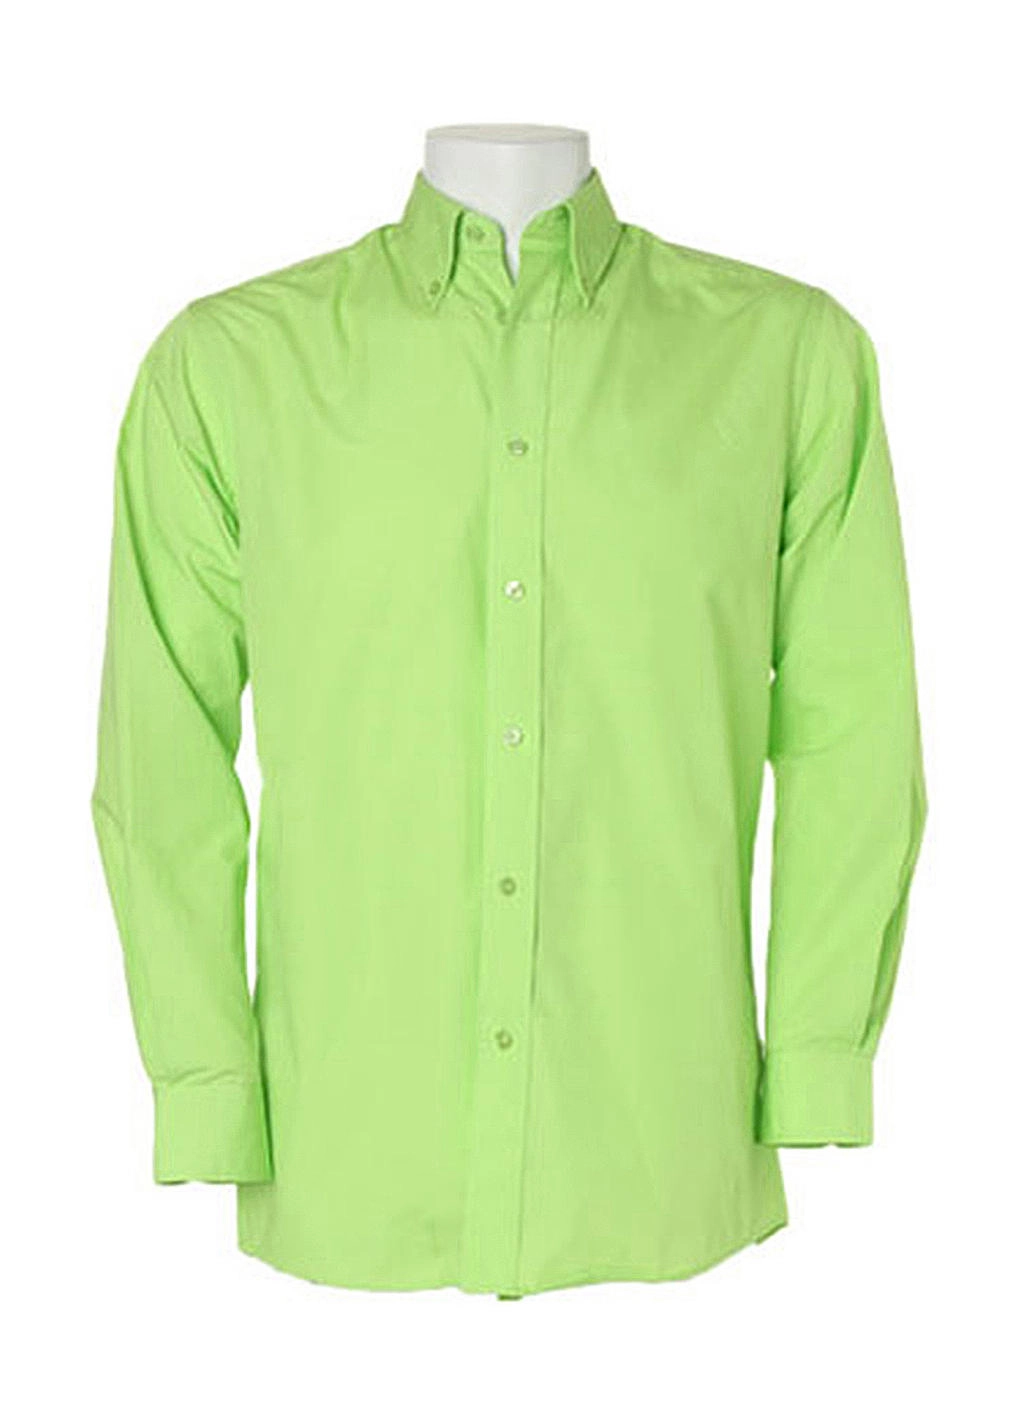 Classic Fit Workforce Shirt zum Besticken und Bedrucken in der Farbe Lime mit Ihren Logo, Schriftzug oder Motiv.